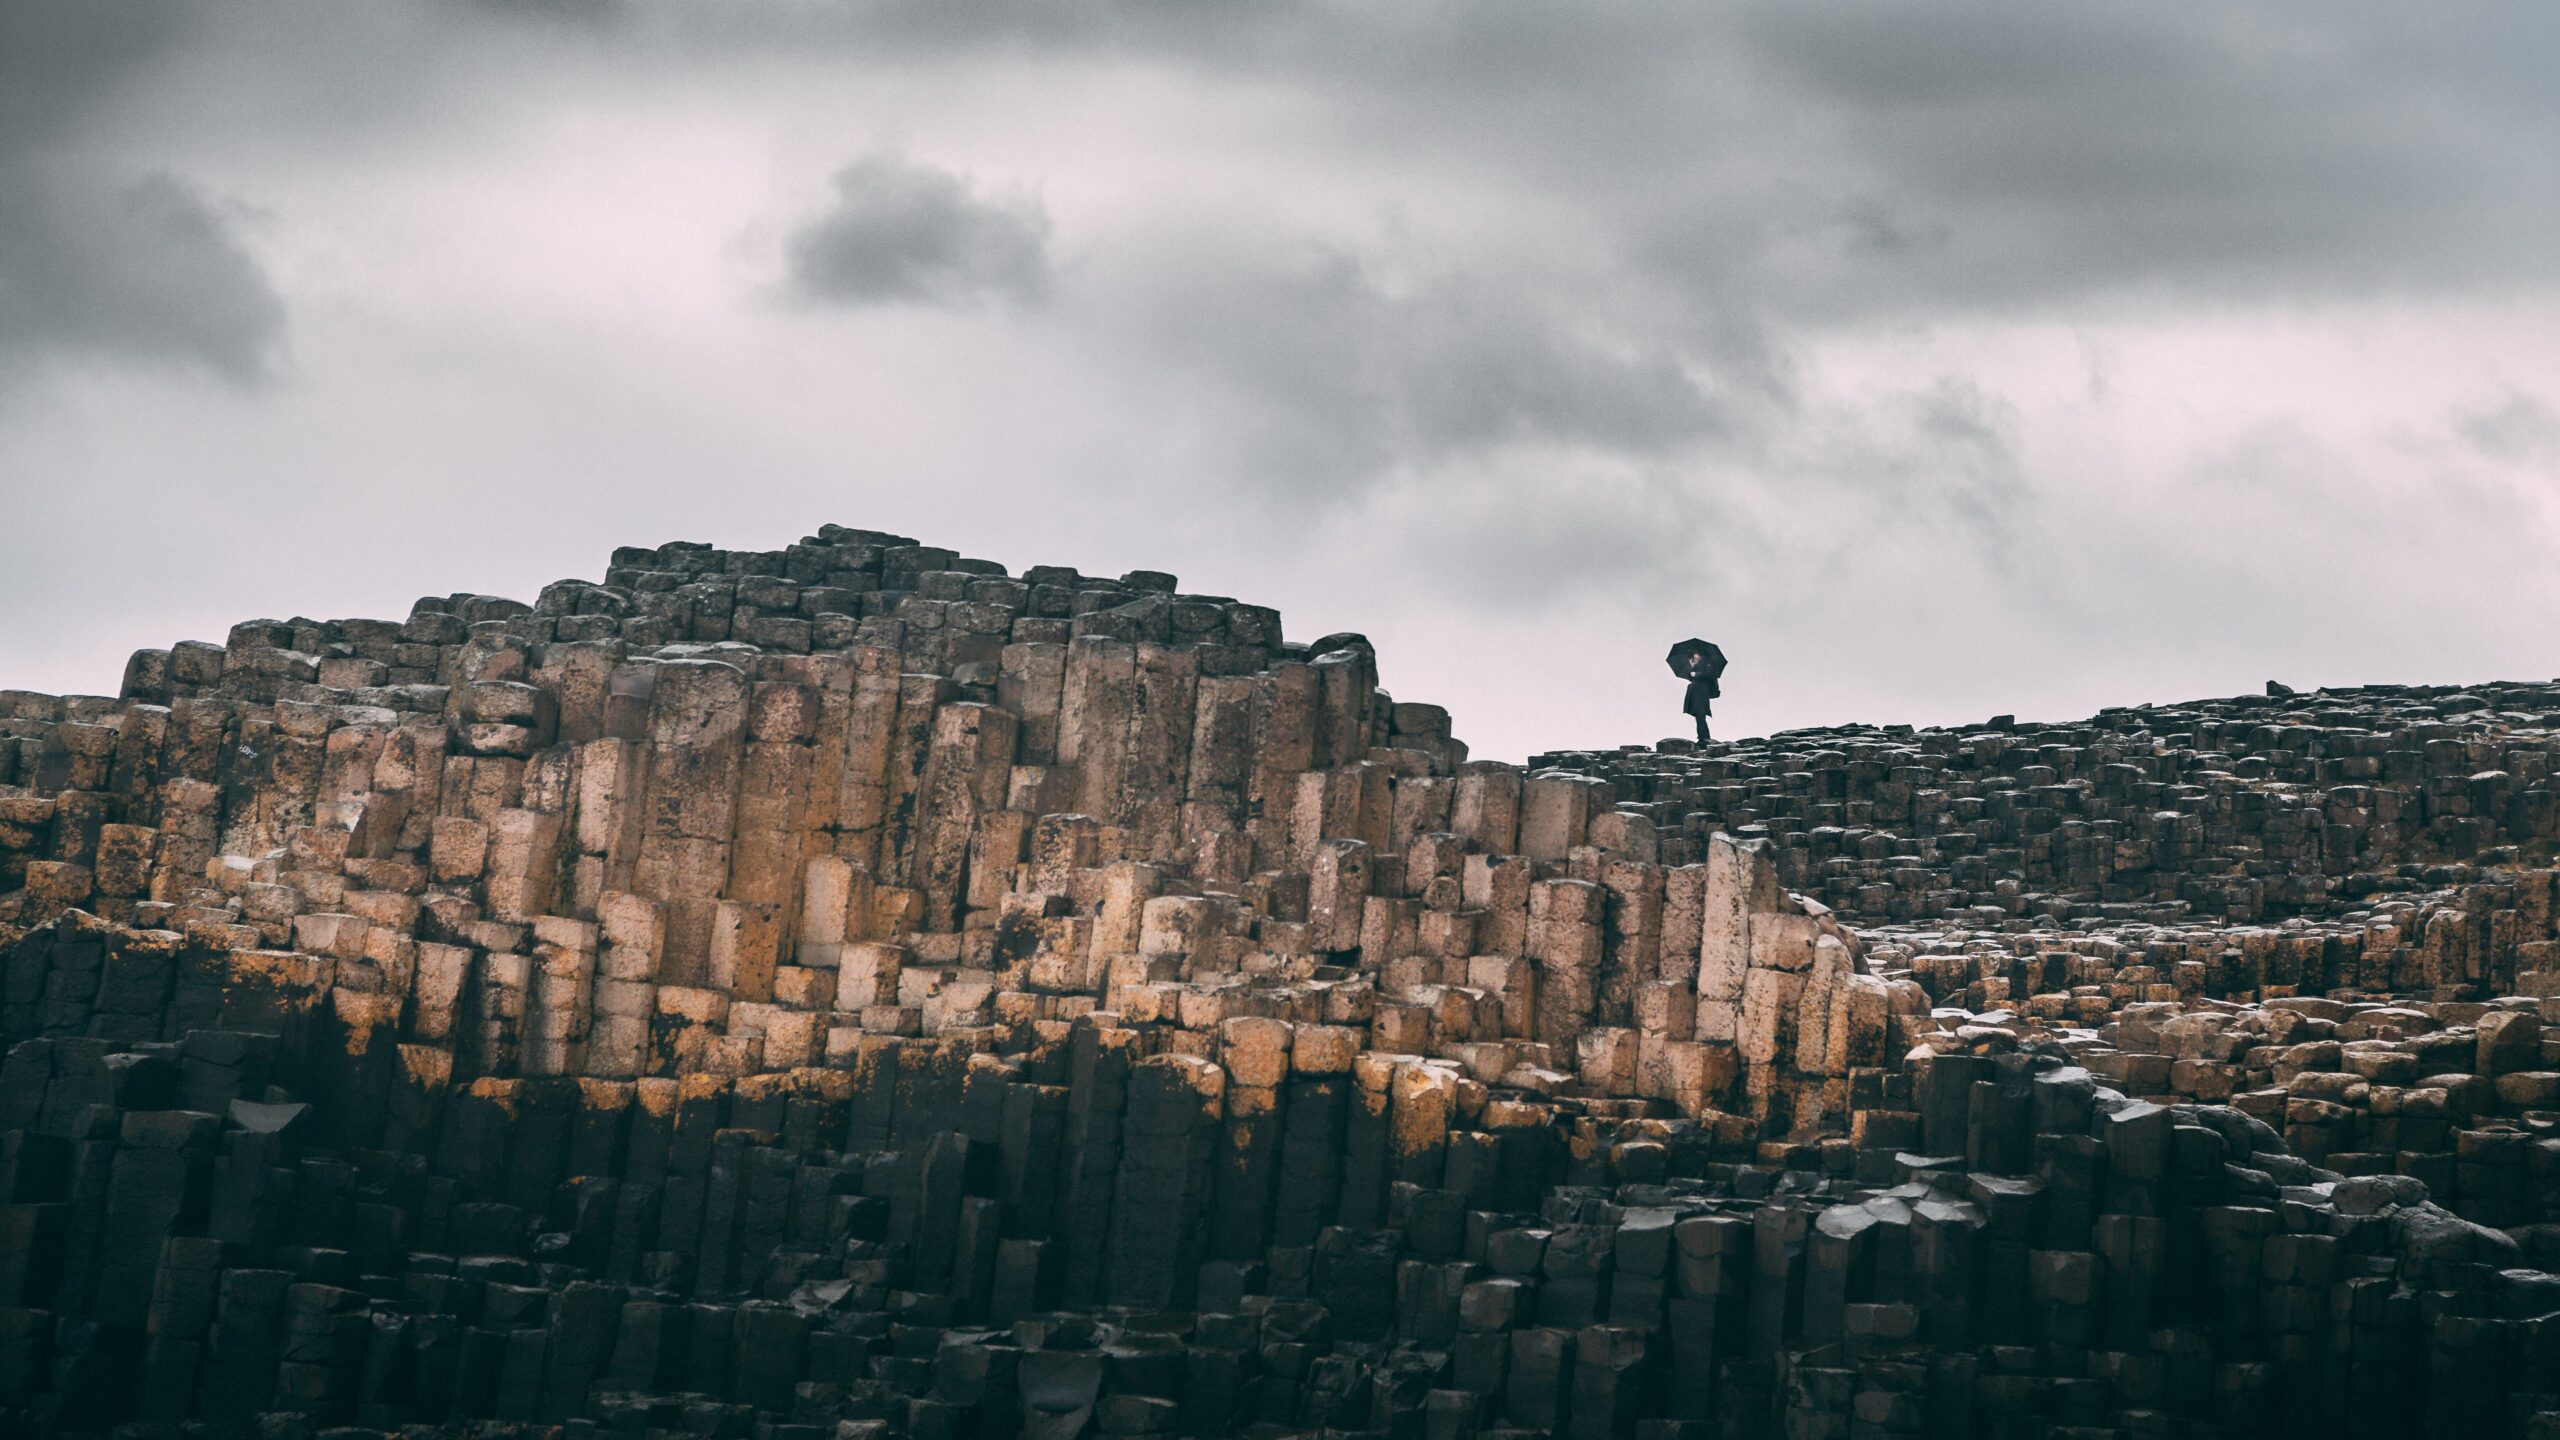 céu nublado sobre a estrutura hexagonal de pedra nomeada calçada dos gigantes que fica na irlanda do norte. Ao fundo é possível ver uma mulher parada com um guarda-chuva preto aberto.